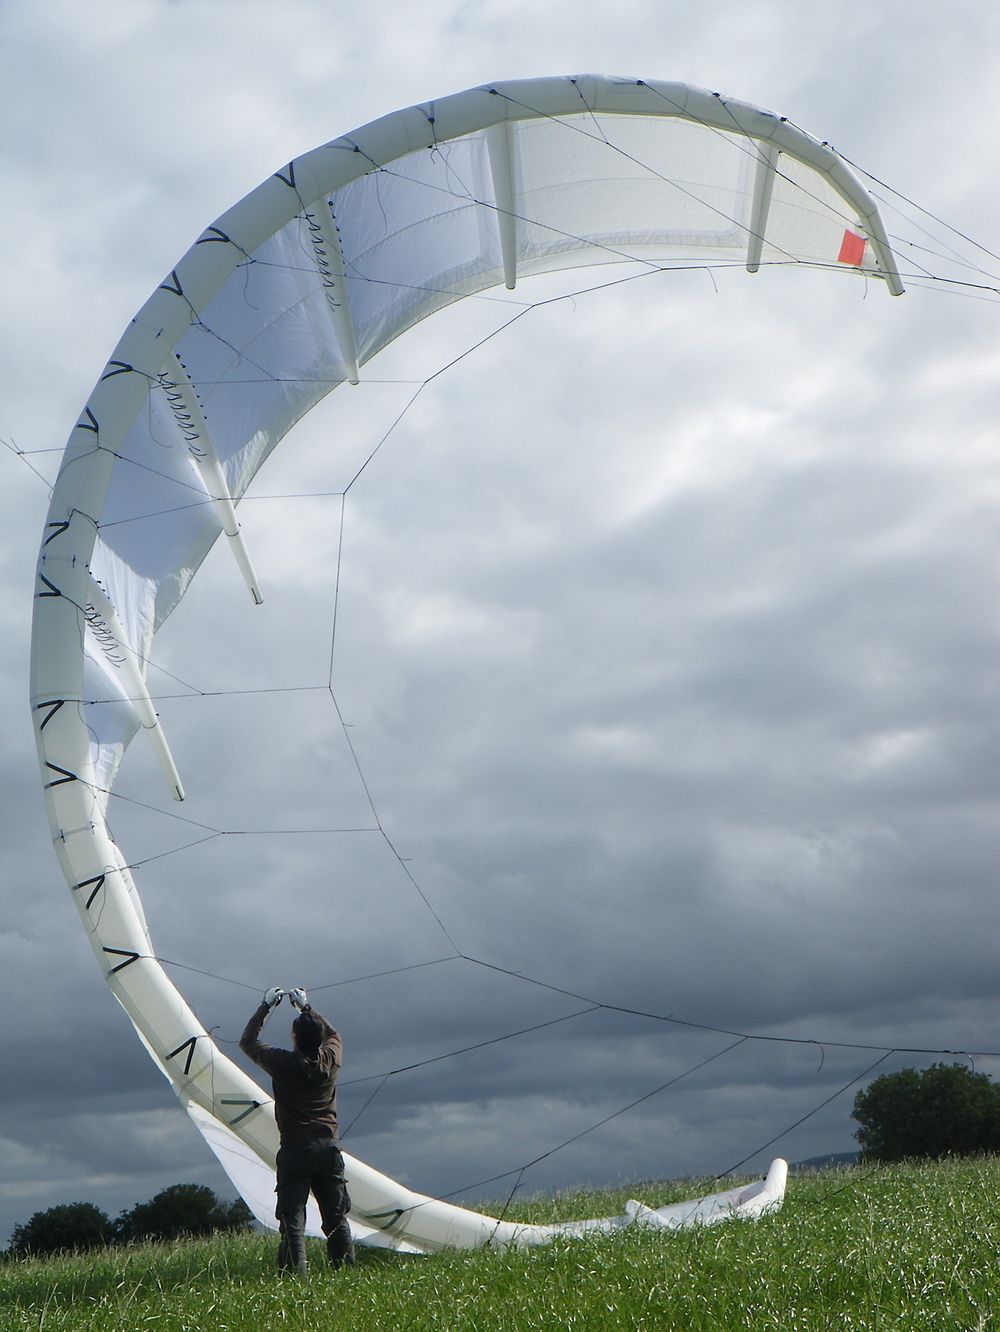 Under en test av konvensjonelle kiter i 2009, målte Kitemill trekkrefter på over 4,5 metriske tonn. På grunn av dette er kitene som blir brukt i prosjektet i dag laget av rigide materialer i kompositt. 